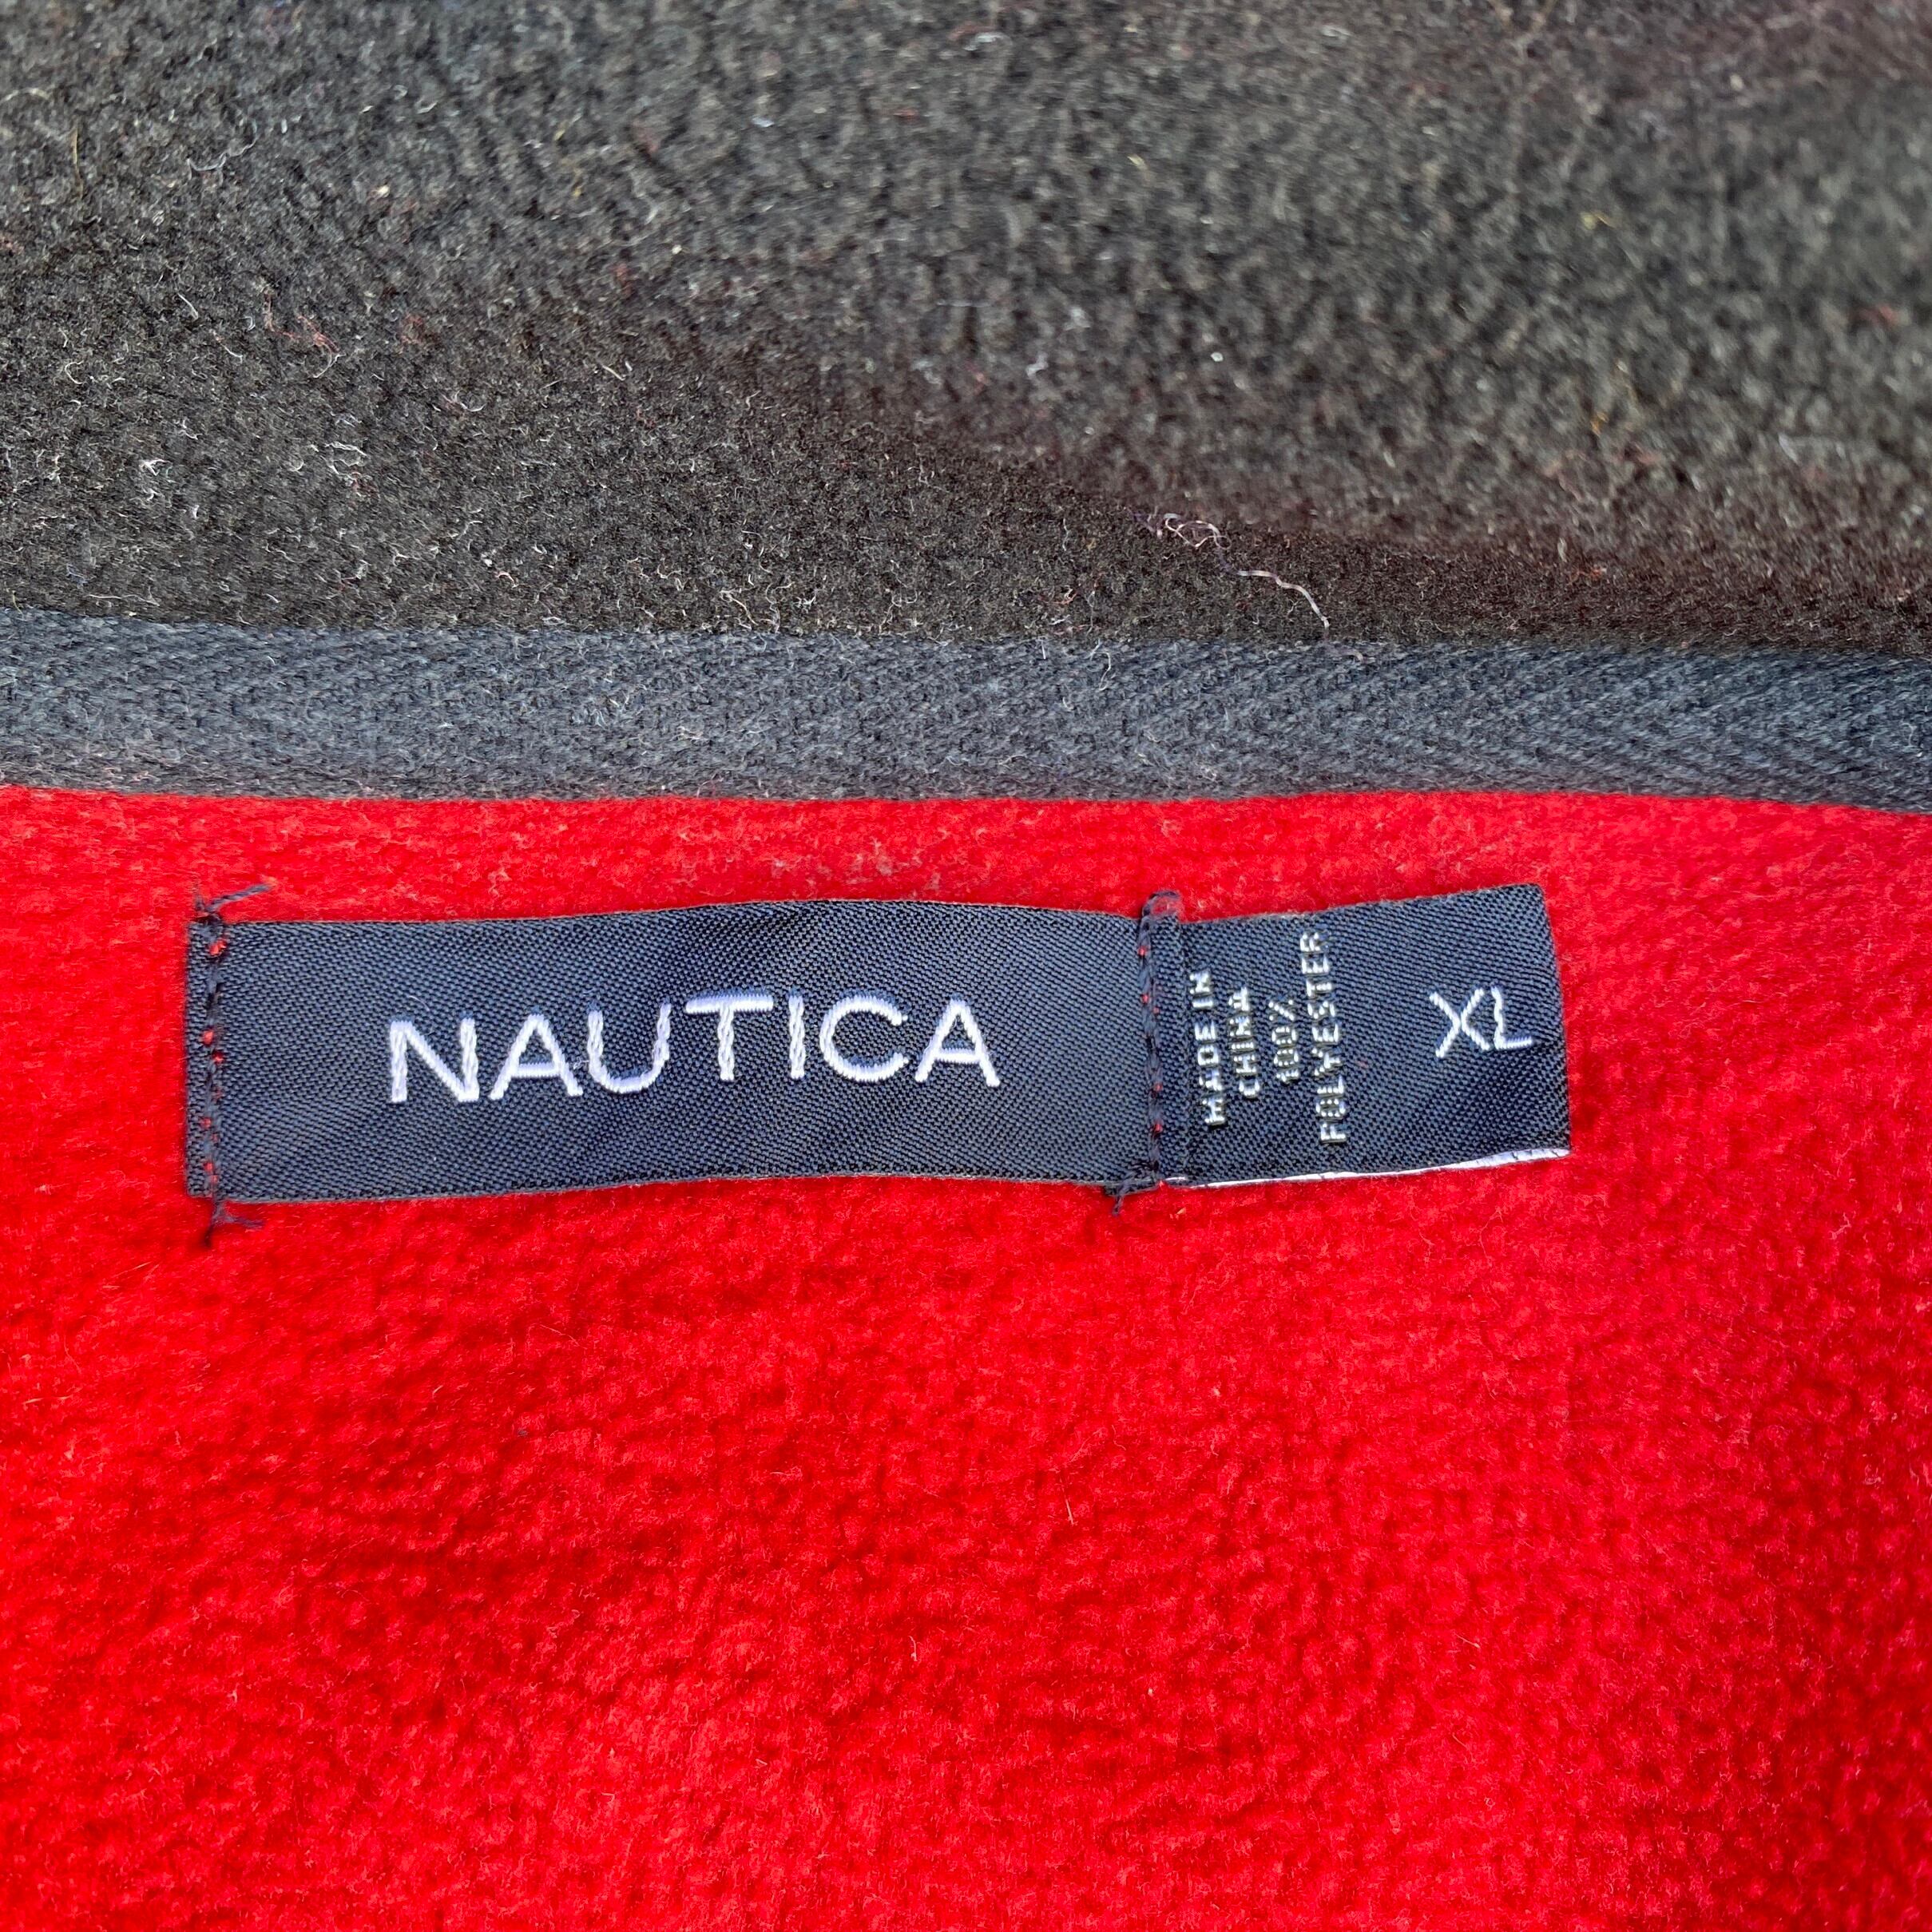 NAUTICA ロゴ刺繍ハーフジップ レッド ネイビー ビッグサイズ